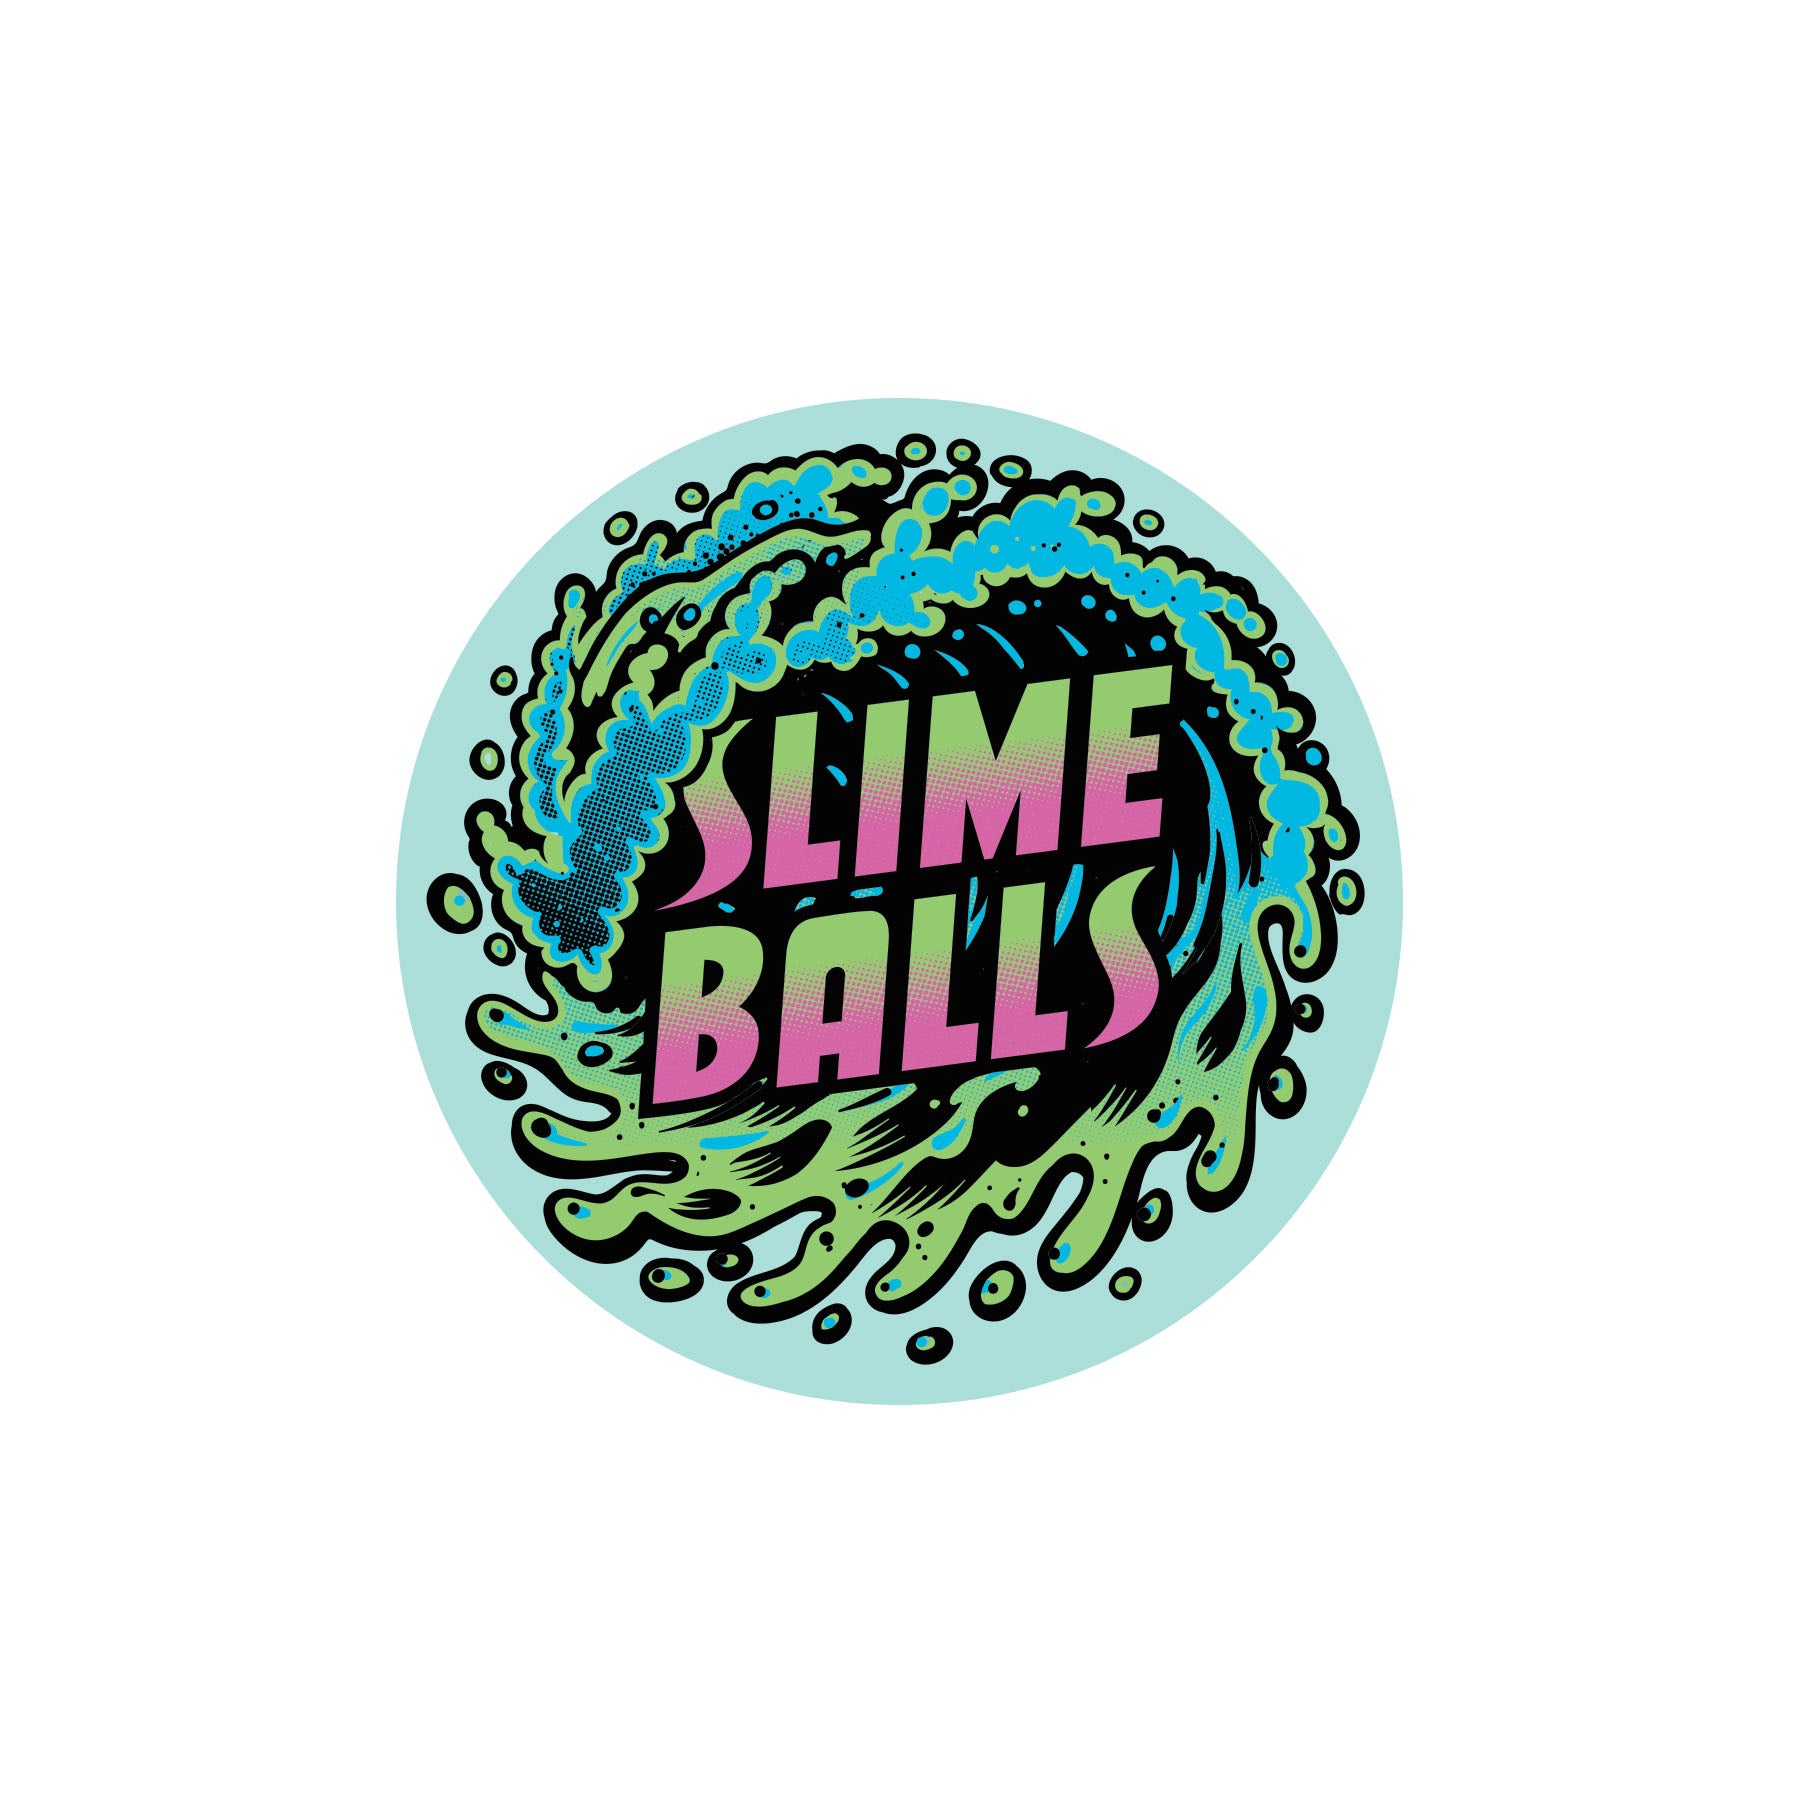 Slime Balls SB Logo Flame Skateboard Sticker 3.5